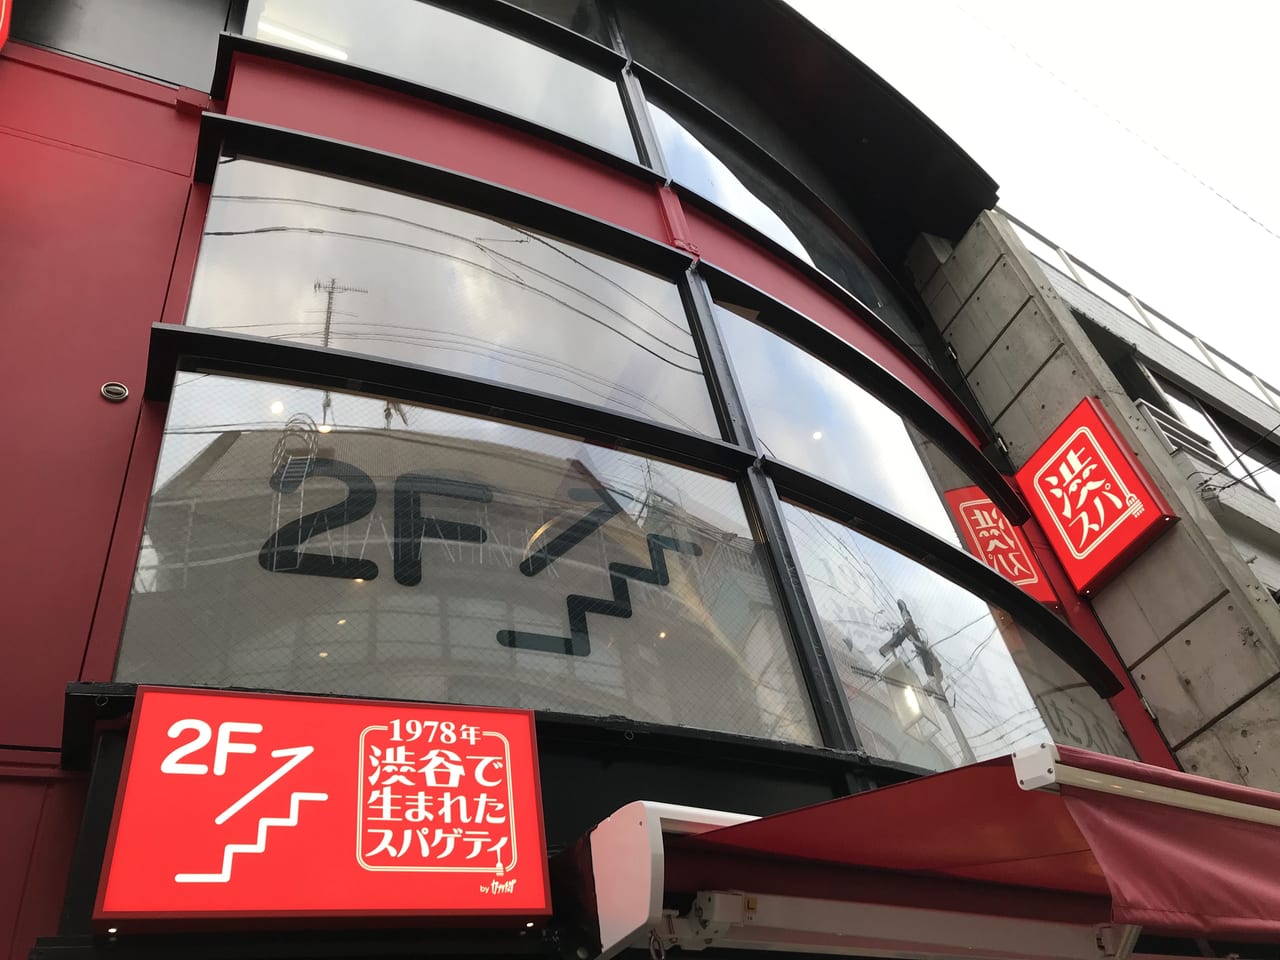 世田谷区下北沢にカプリチョーザの懐かしいトマトスパゲティの店「1978 年渋谷で生まれたスパゲティ」が2021年10月1日グランドオープンします。